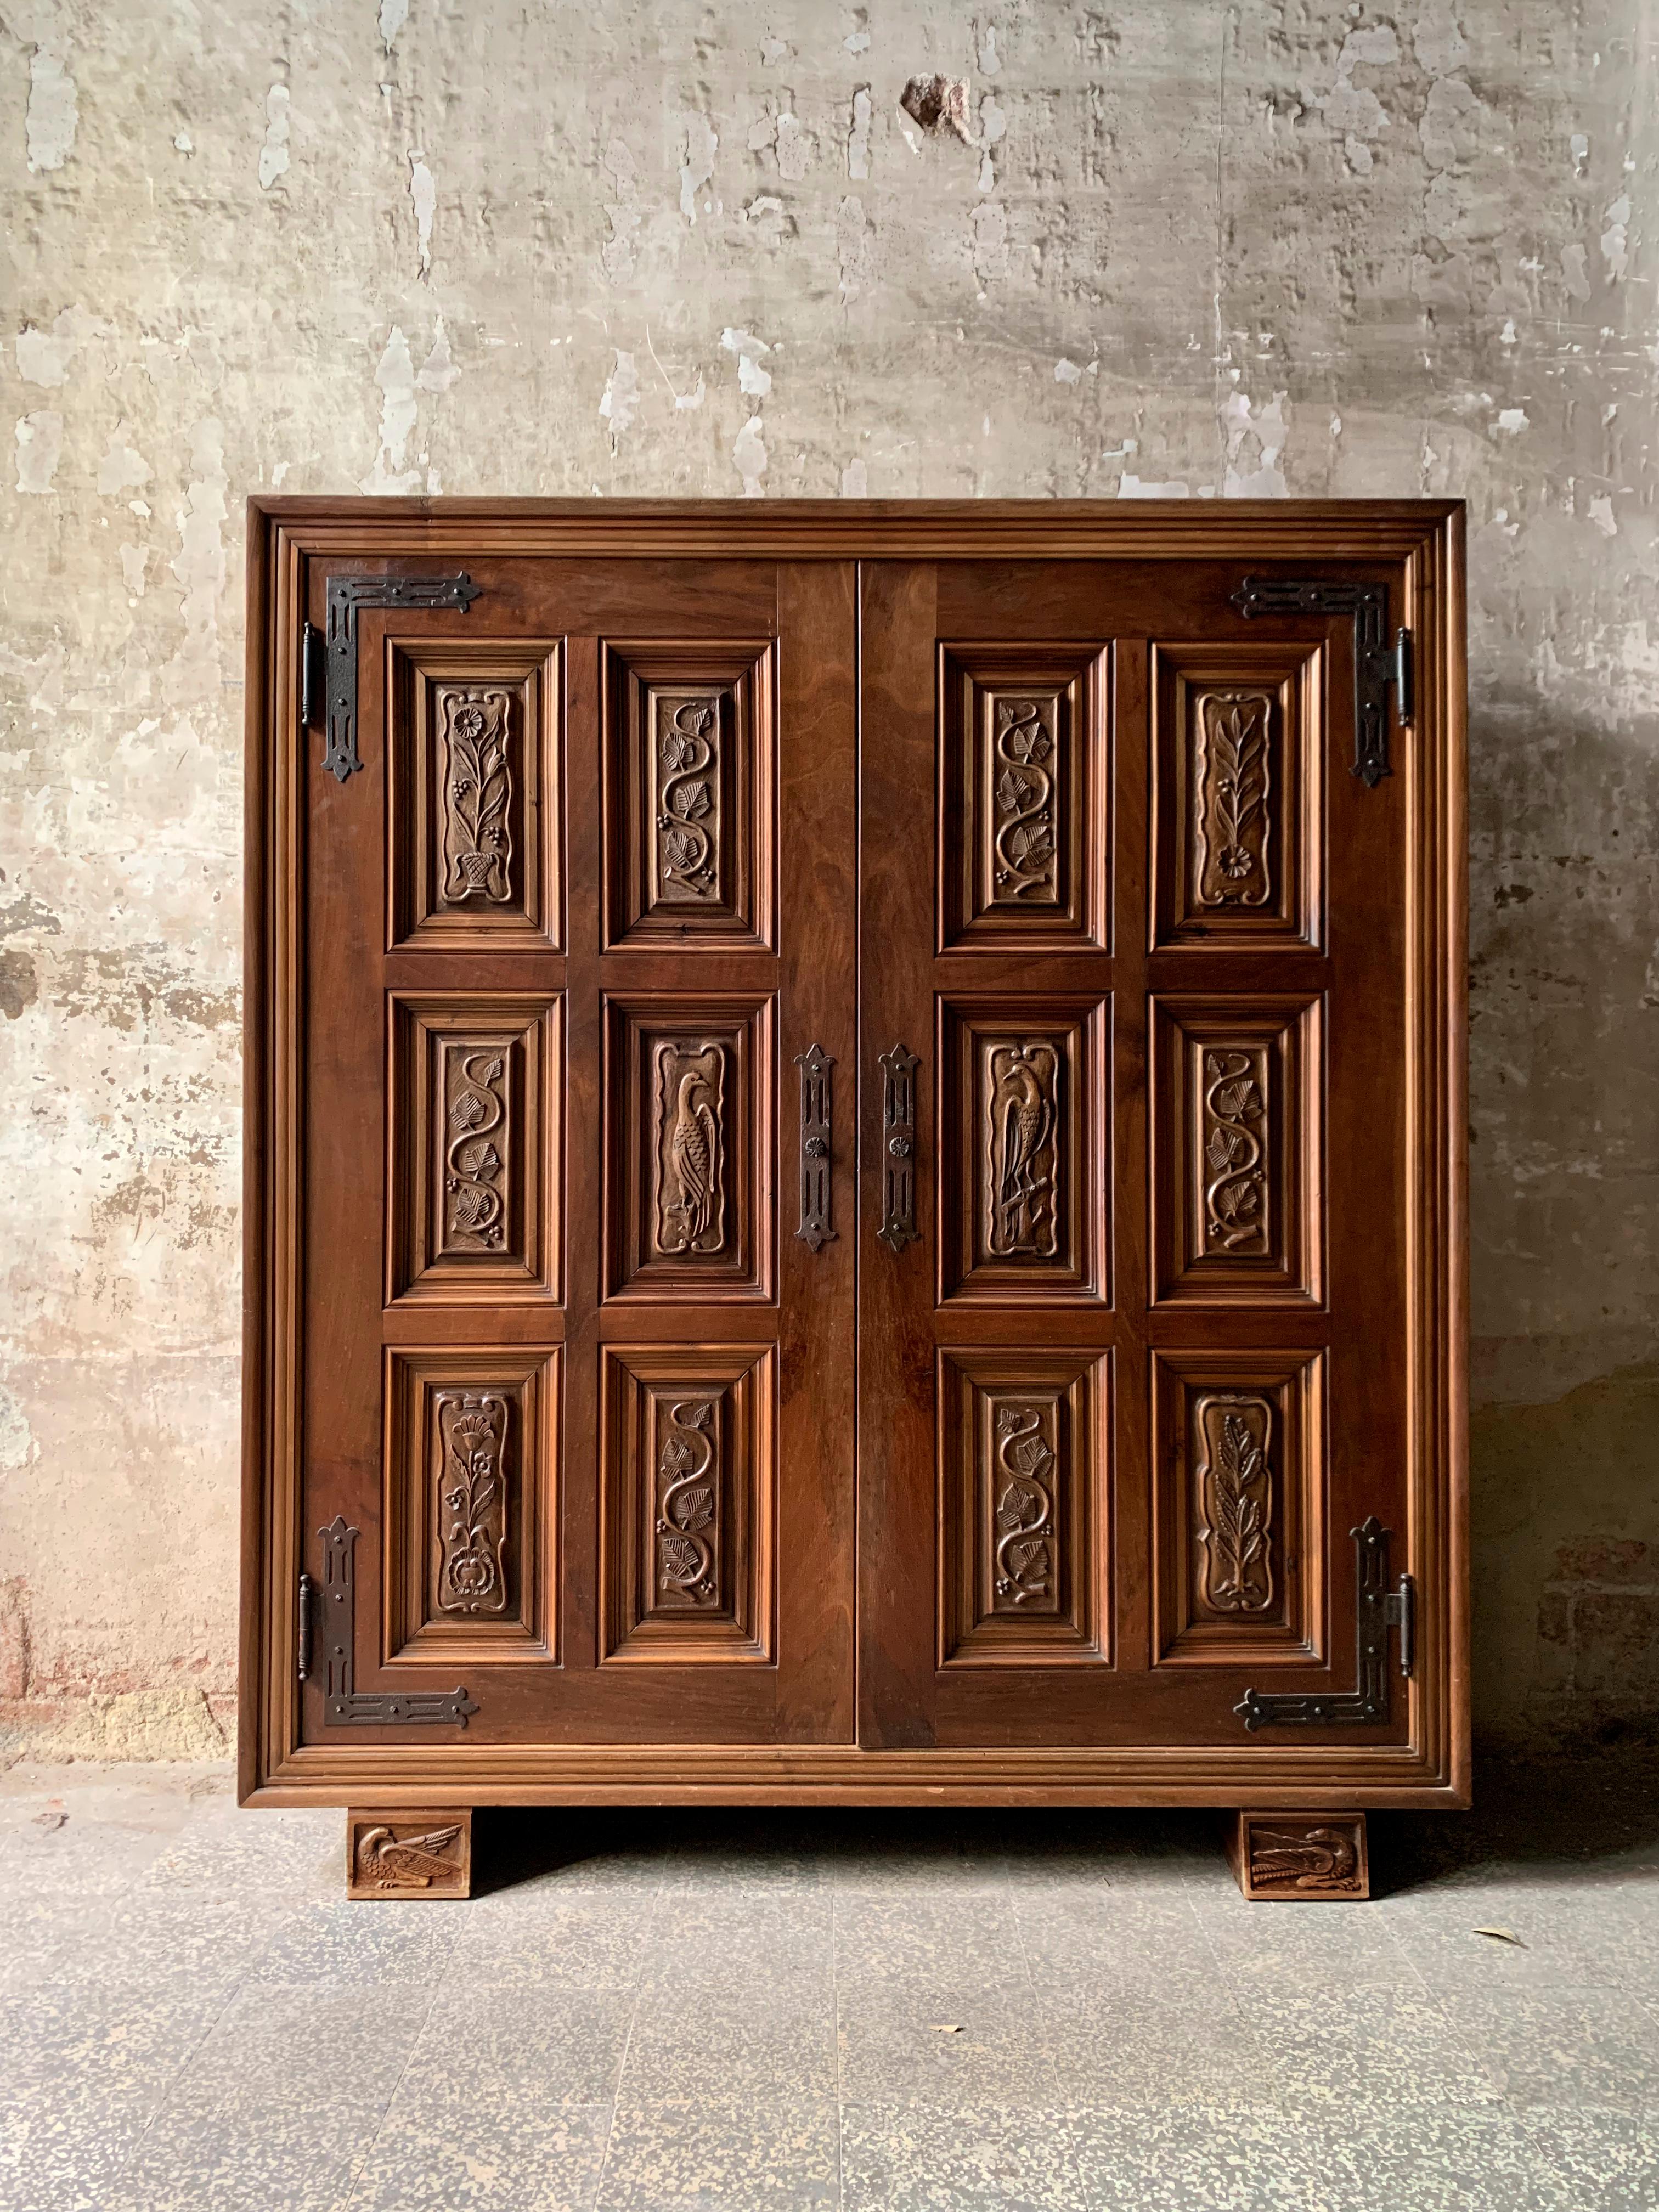 Nous vous présentons ce magnifique meuble de style organiciste espagnol, un véritable bijou façonné en bois vers 1940. Chaque aspect de cette pièce artisanale respire le charme et l'élégance, capturant l'essence du design espagnol de l'époque. Les